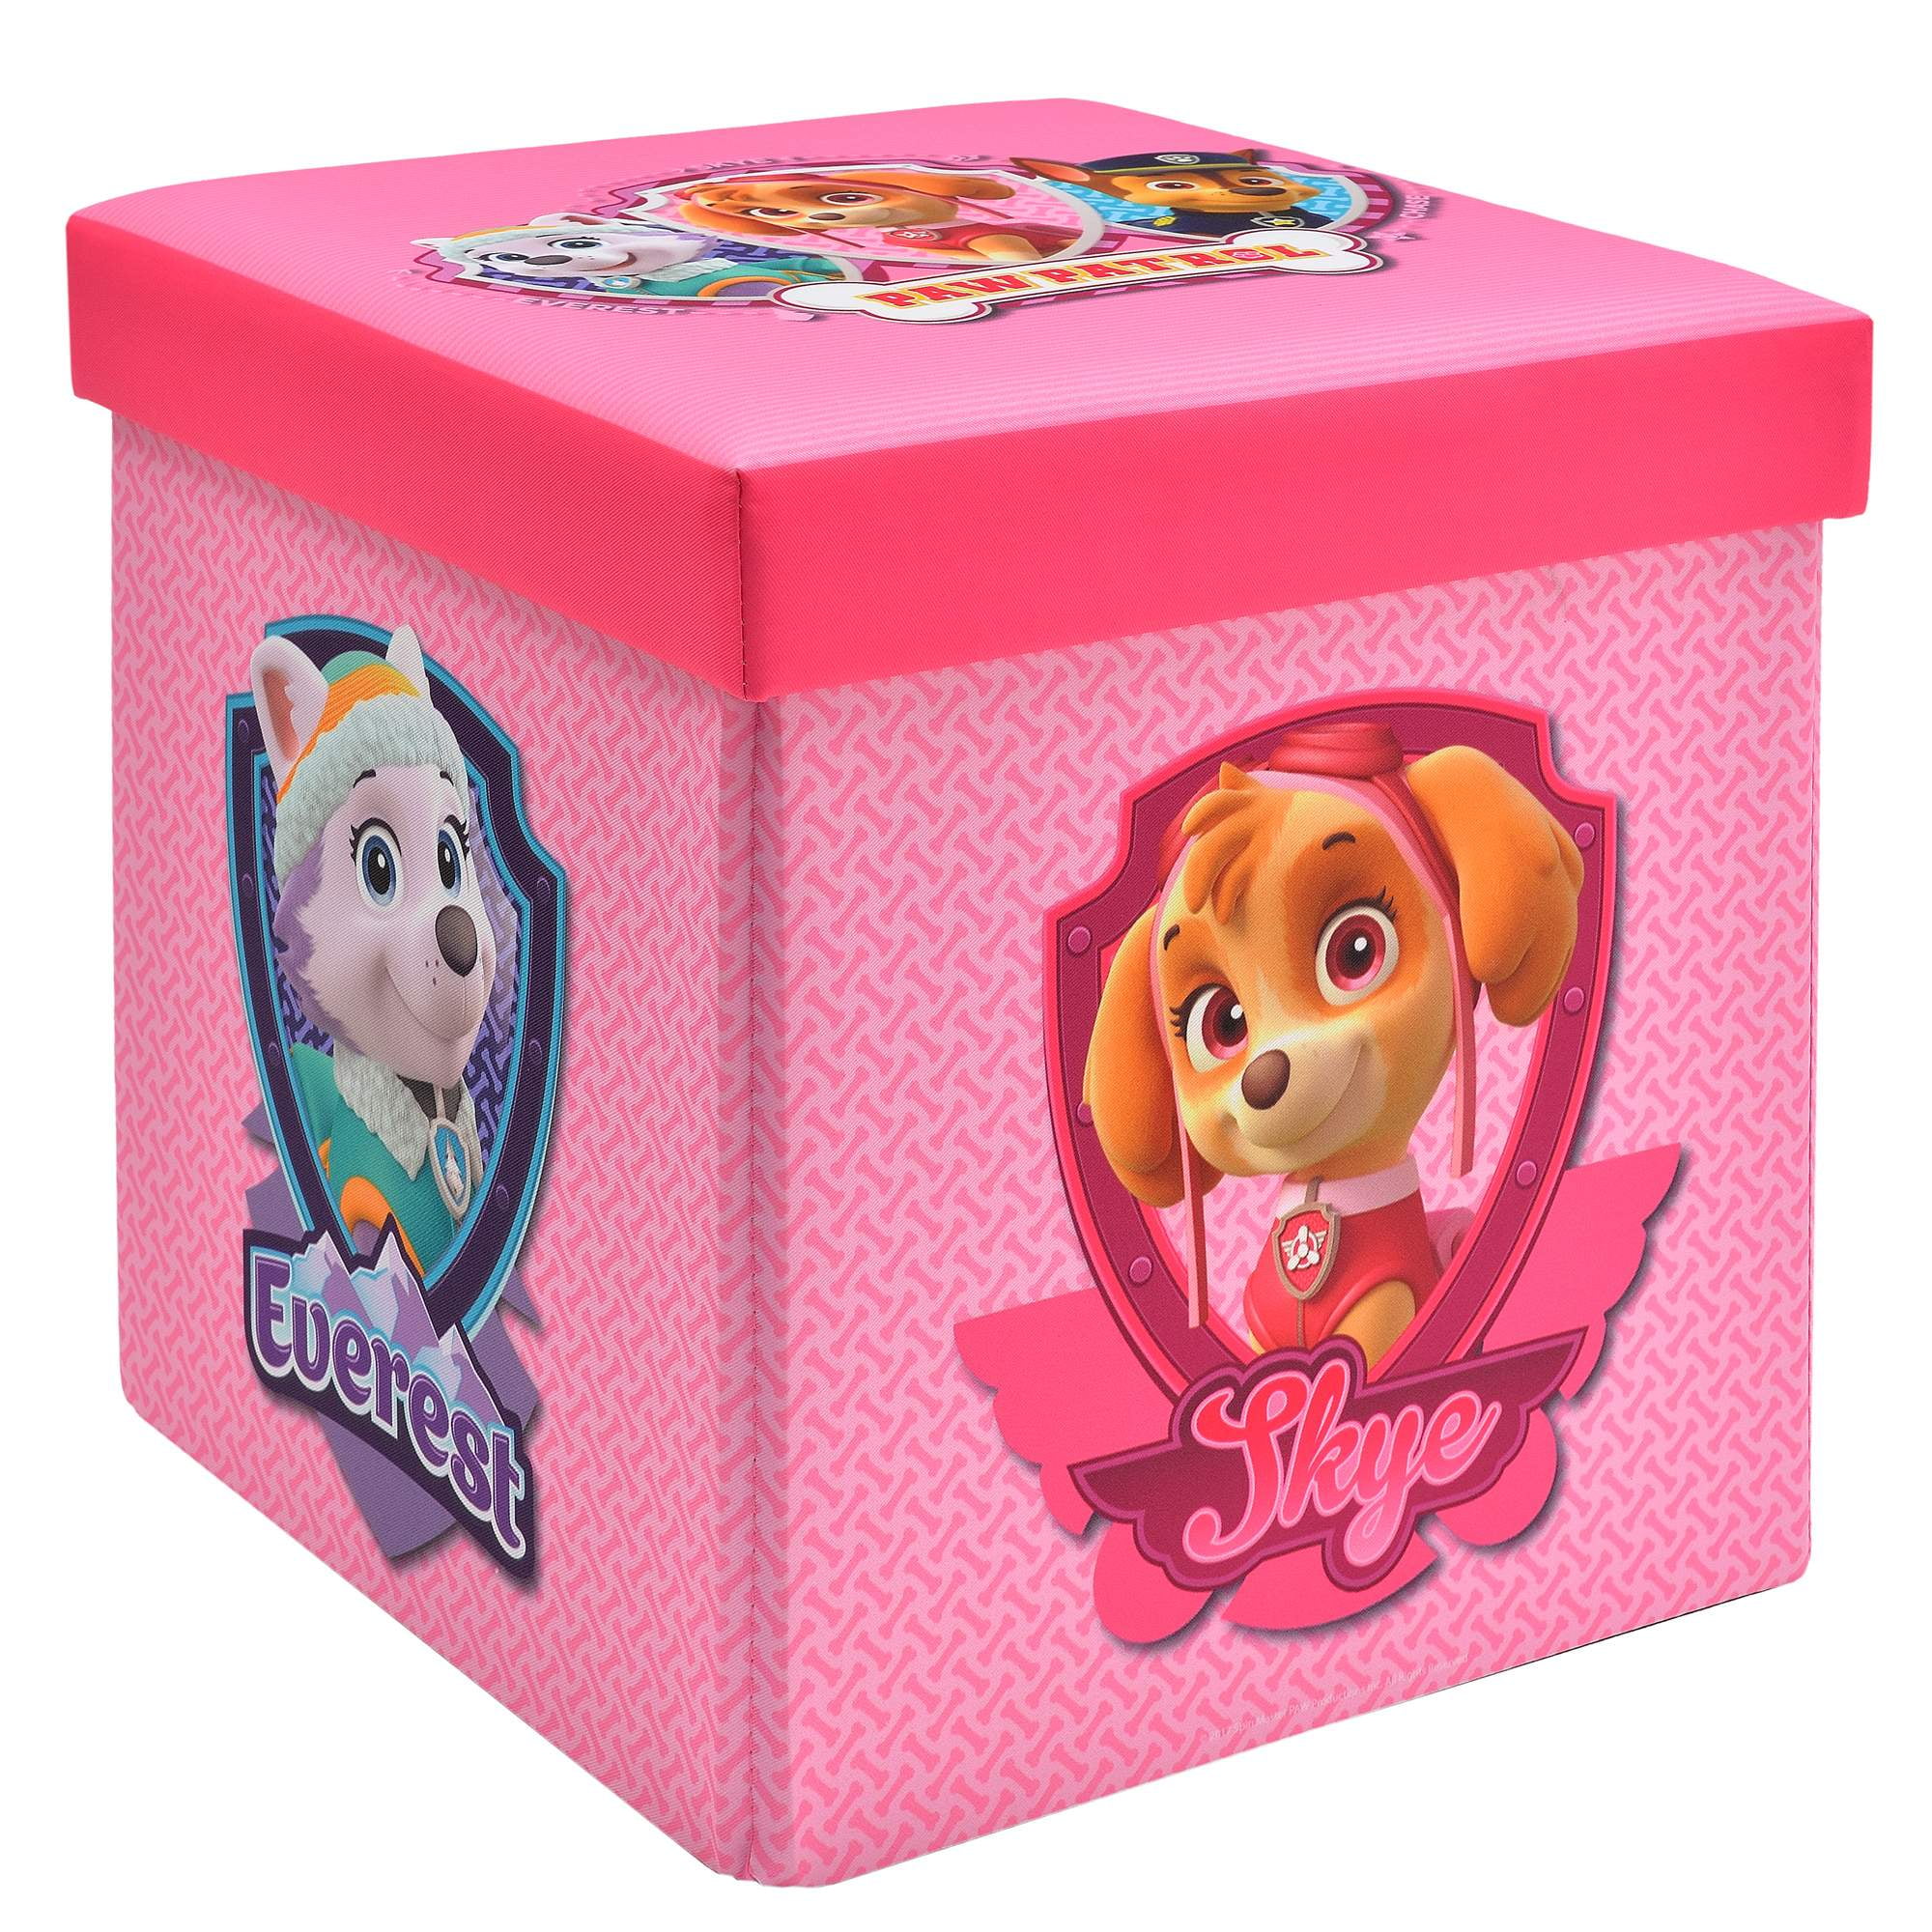 Details about   Paw Patrol Toy Box Storage Trunk Lightweight Organizer Kid Furniture Pups Canvas 